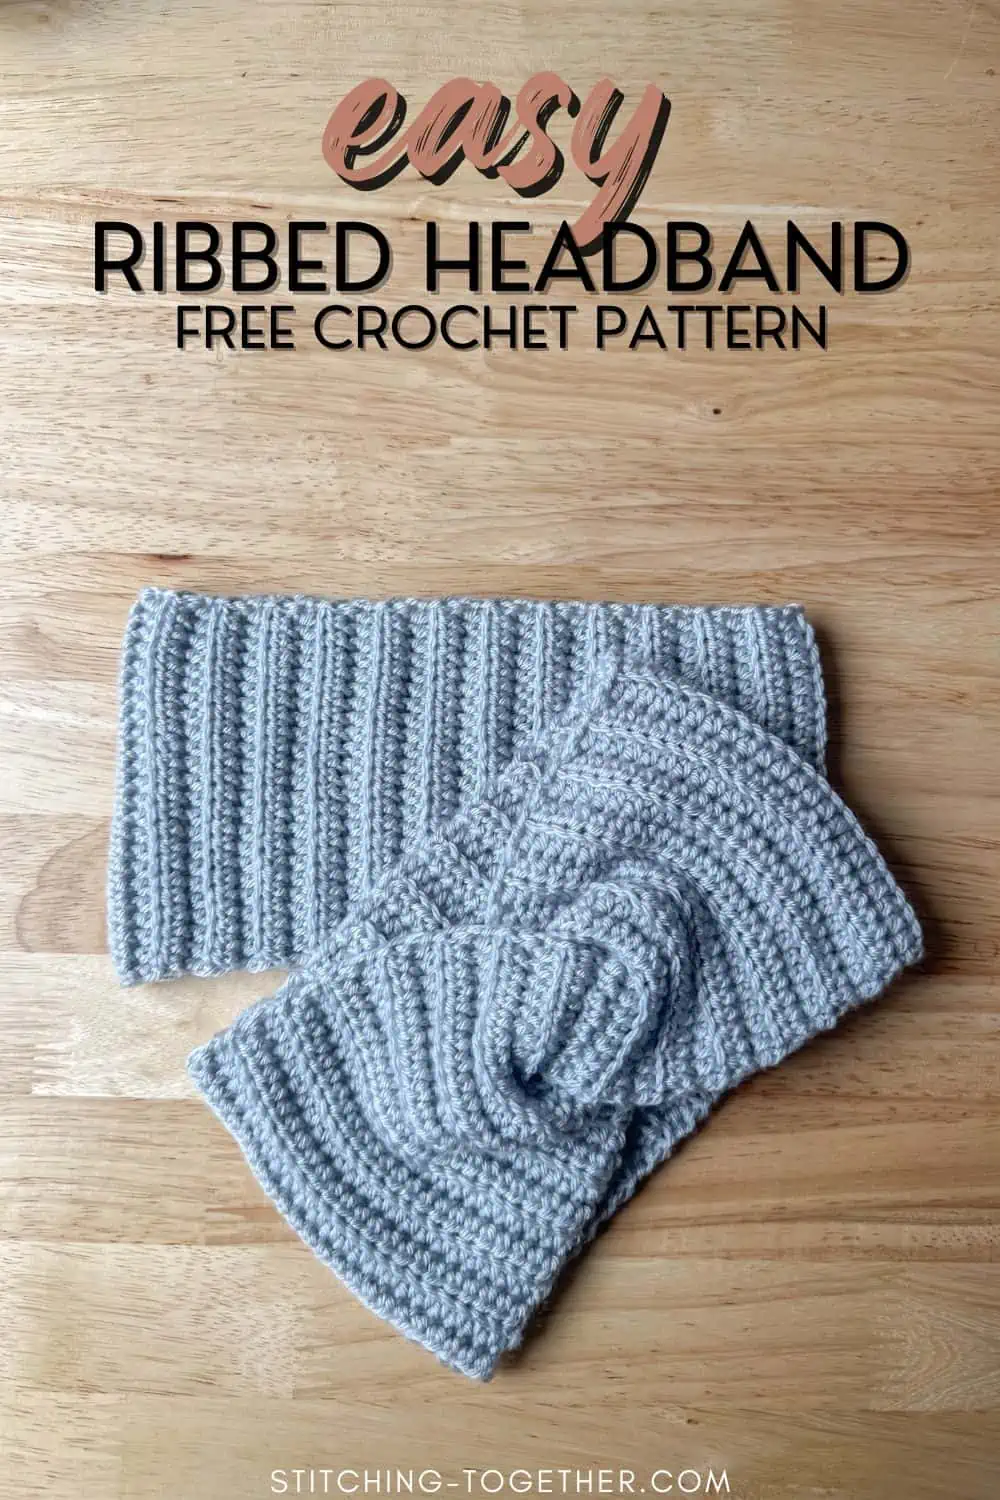 two crochet ribbed headbands with text overlay reading "easy ribbed headband free crochet pattern"